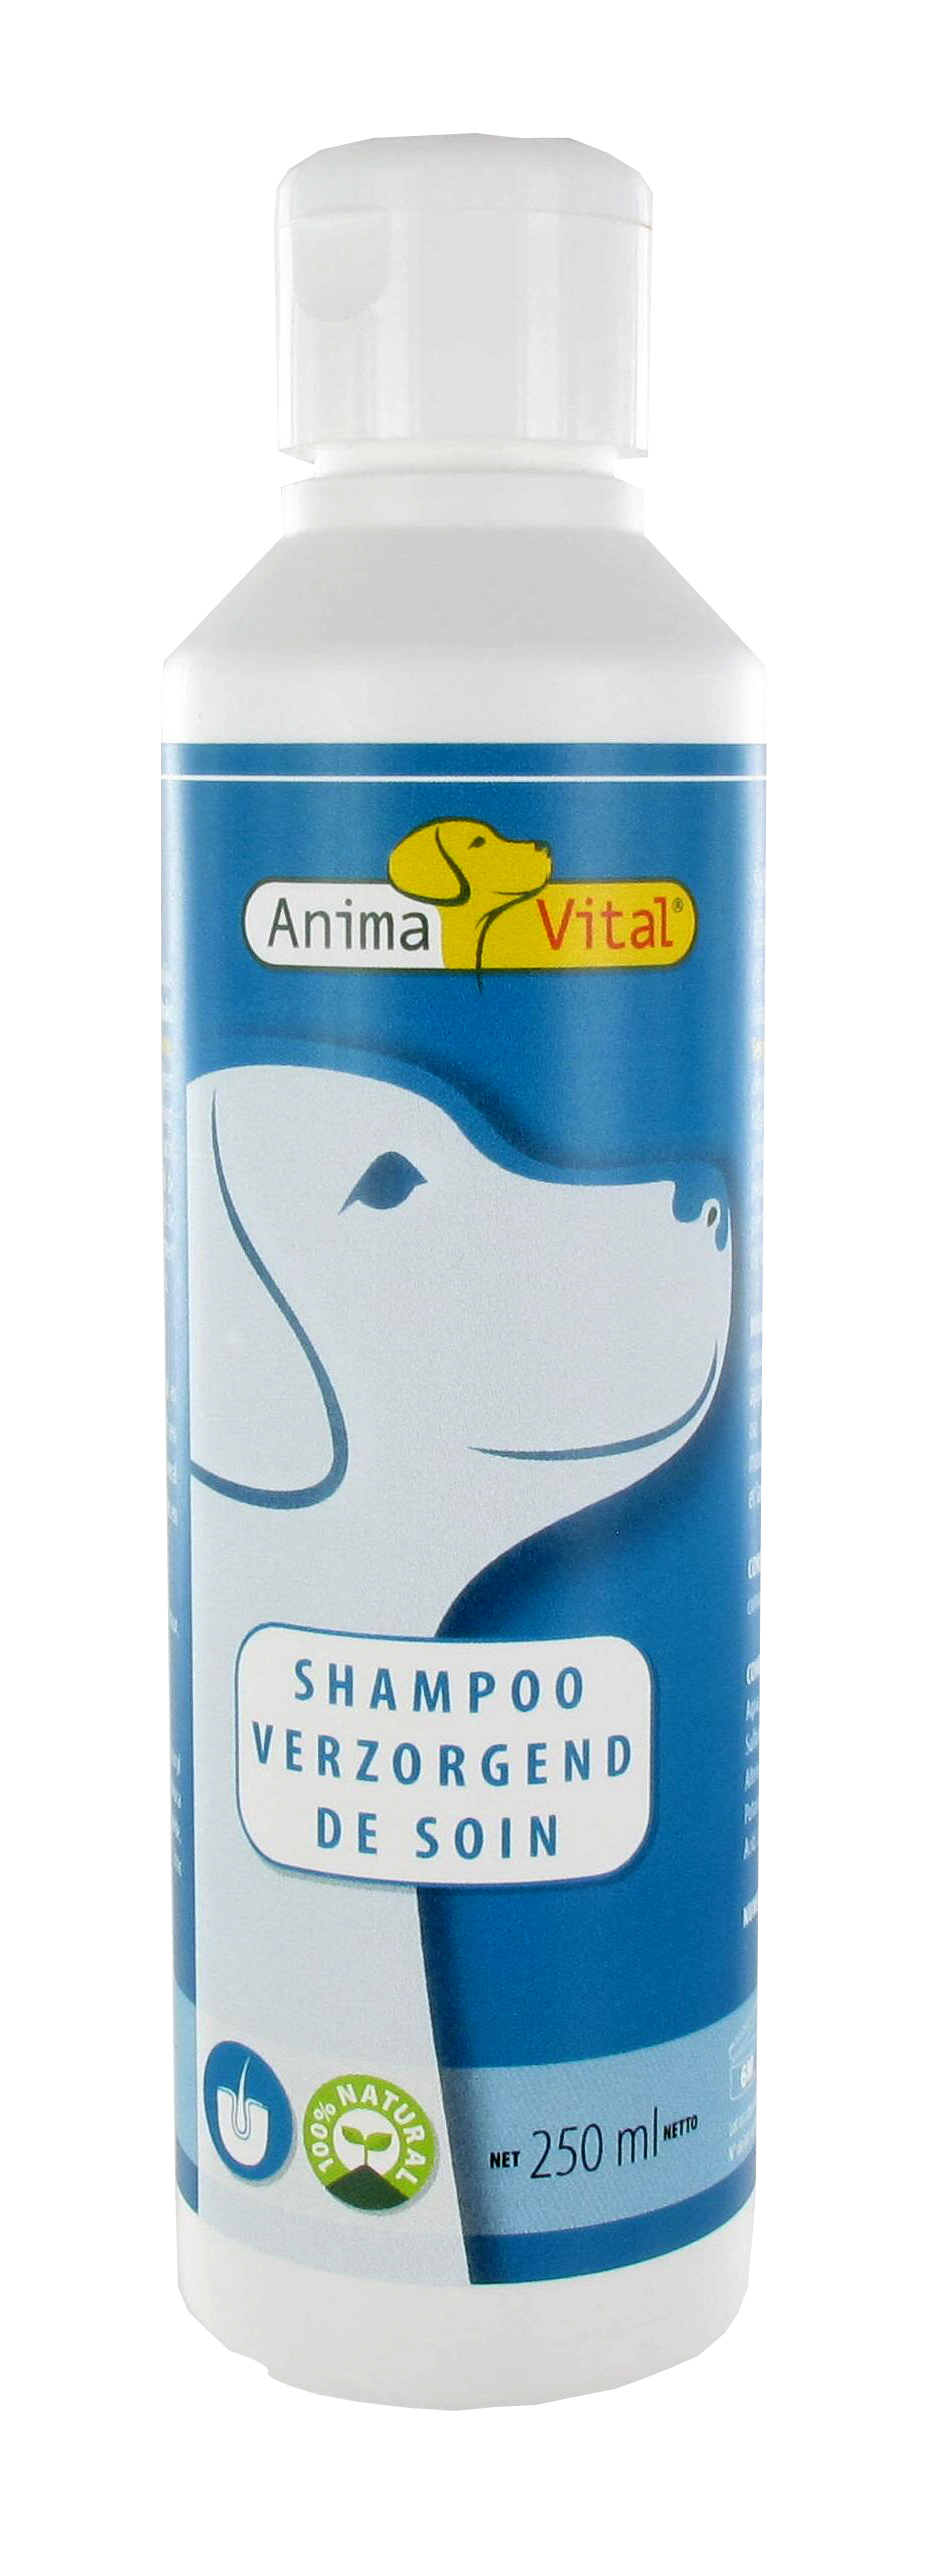 Hond & kat shampoo verzorgend